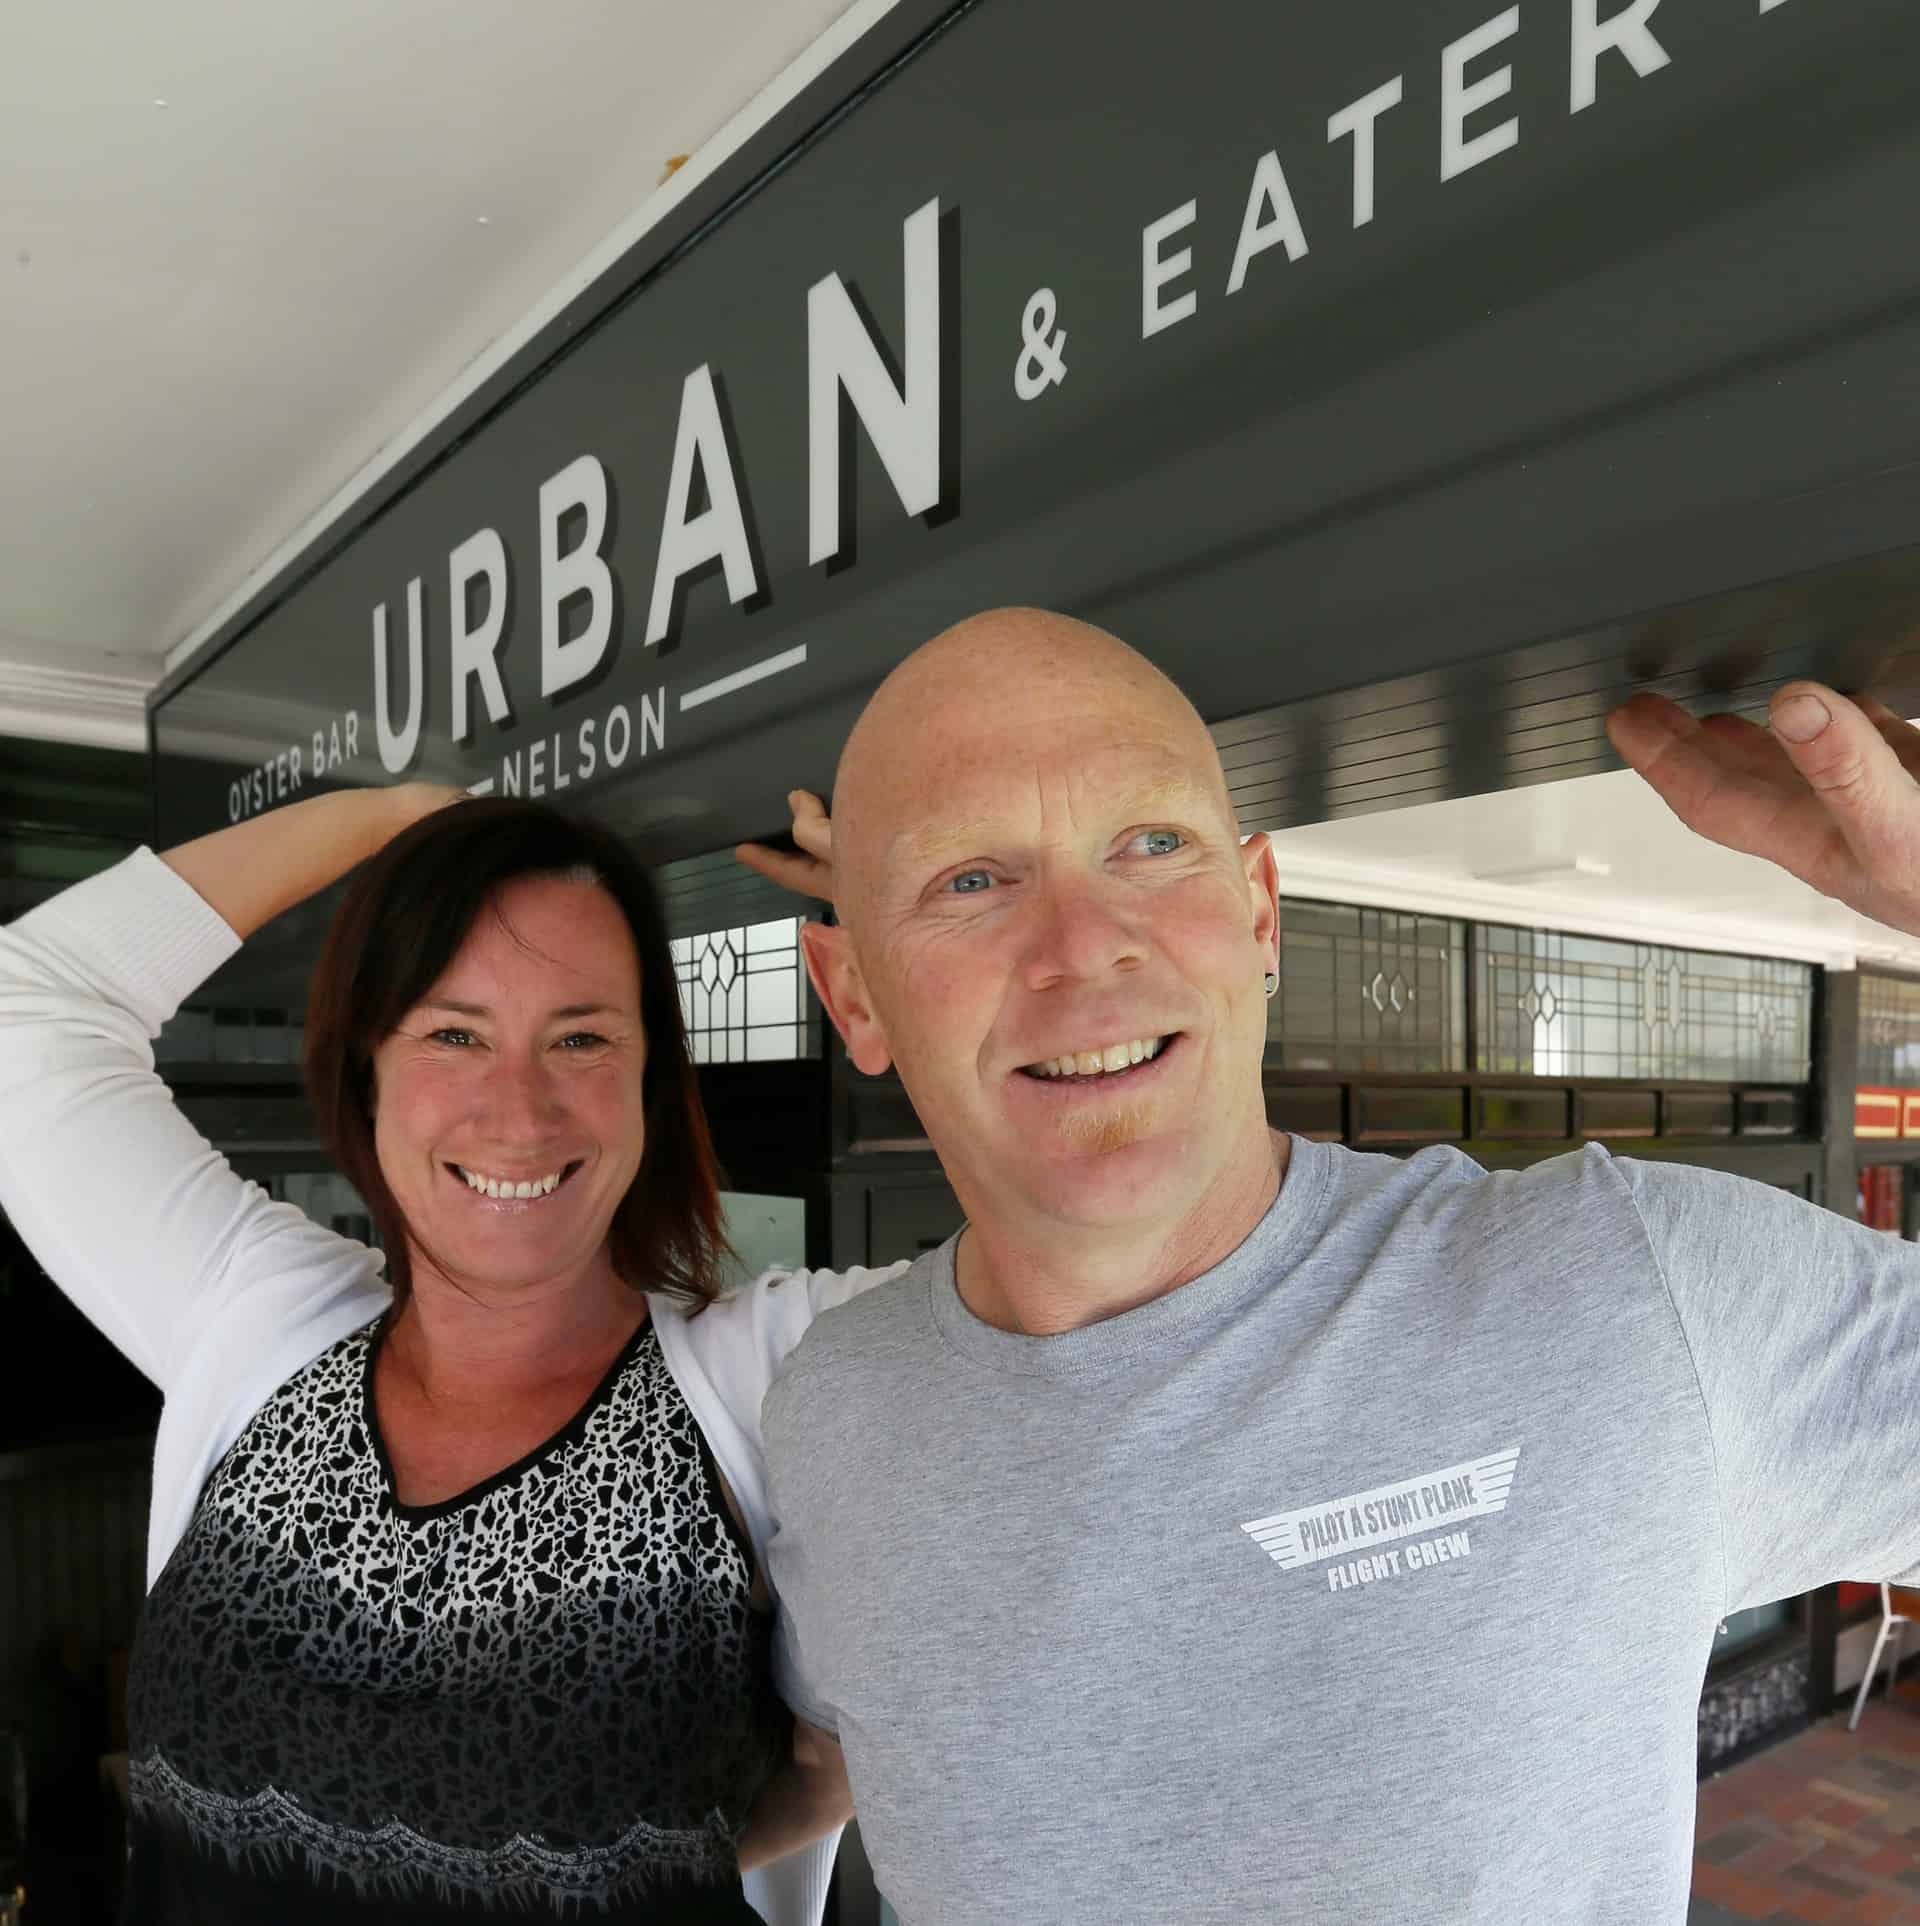 Matt Bouterey – Urban Oyster Bar & Eatery – Nelson Mail 29.09.15